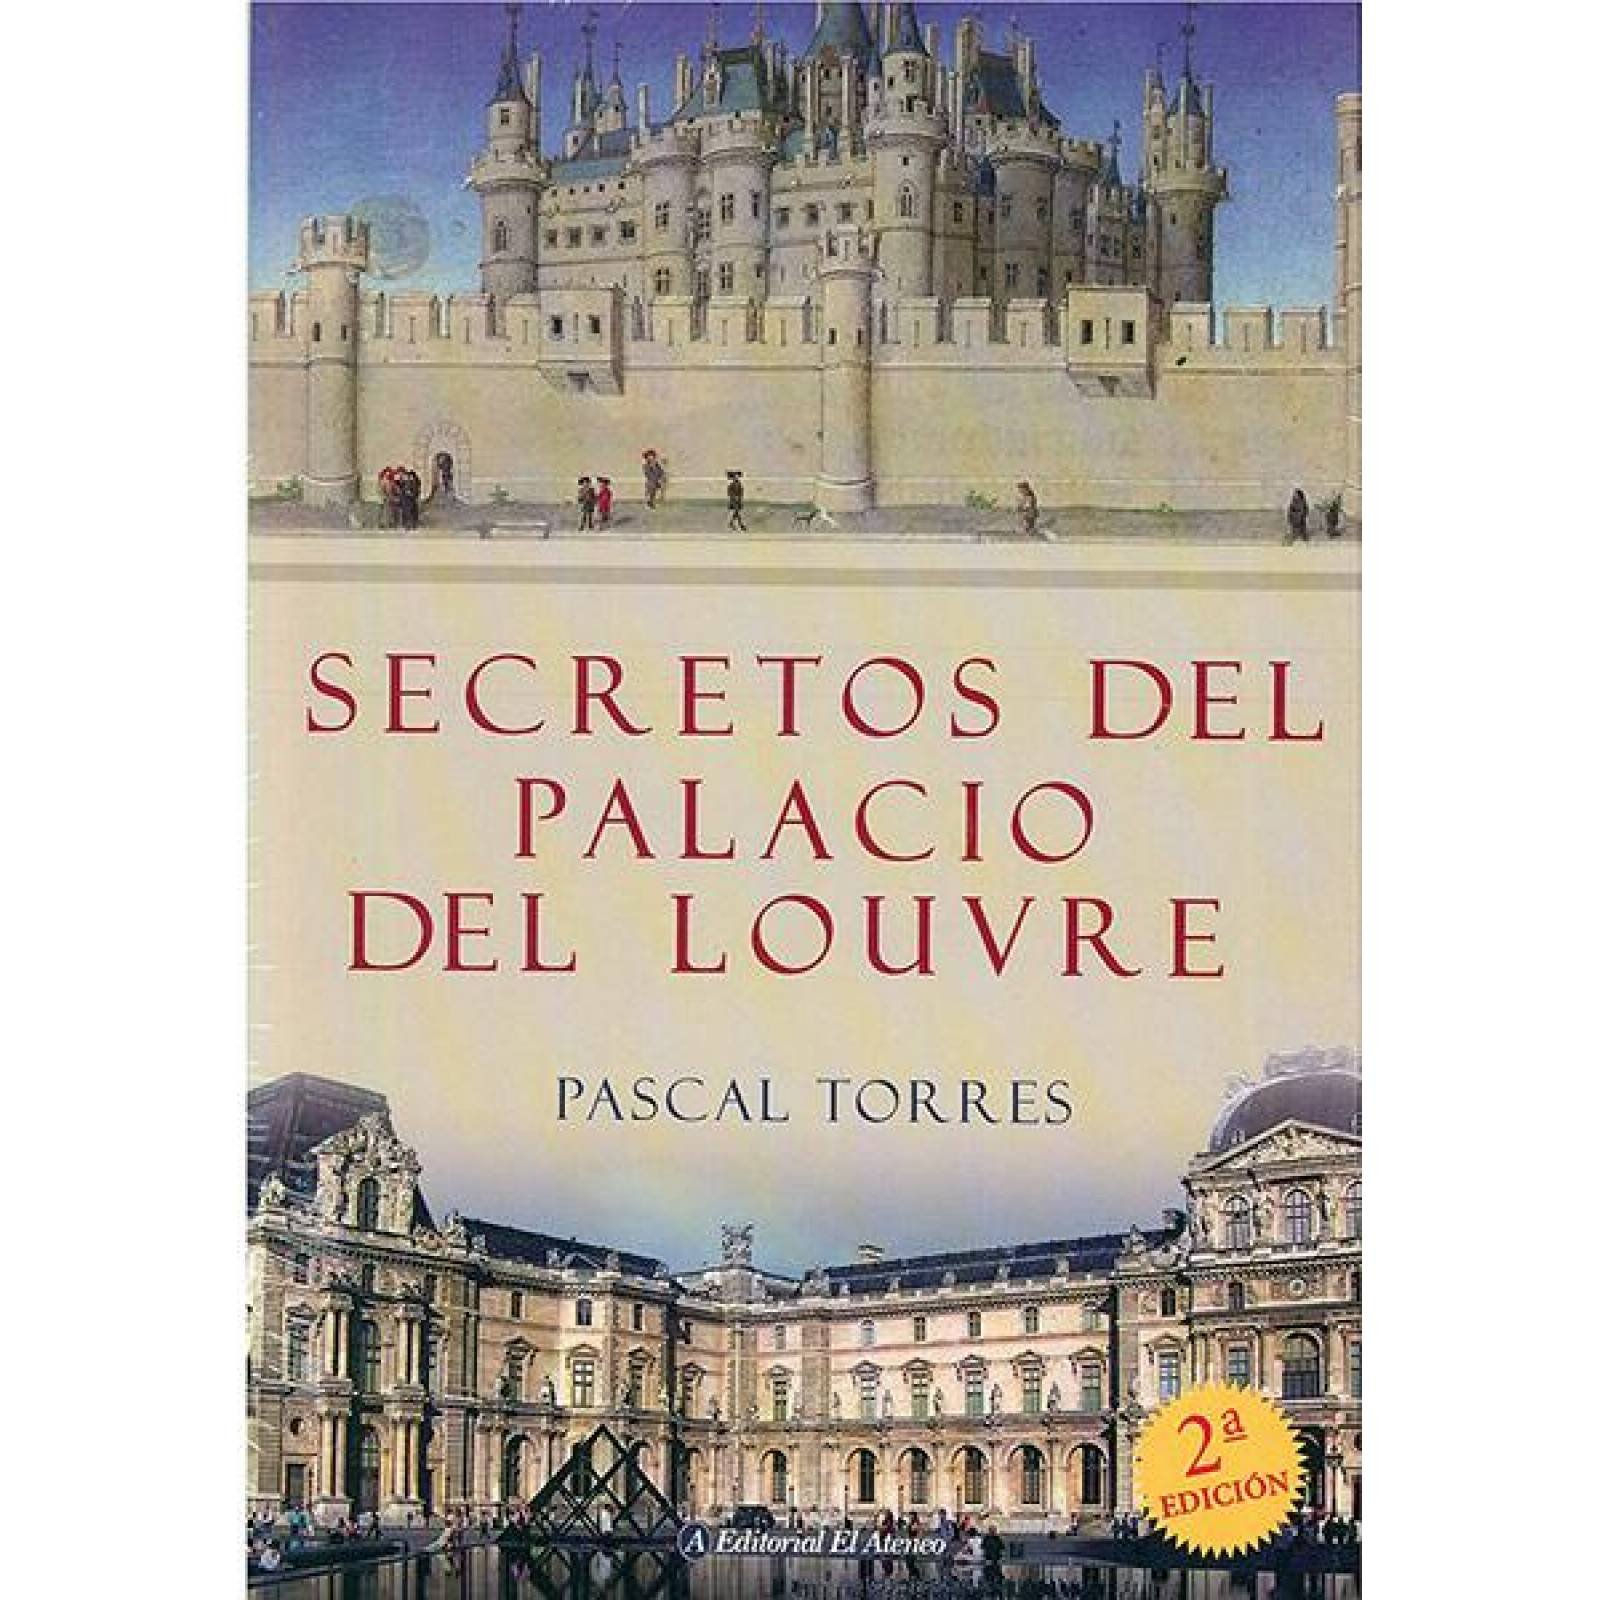 Secretos del palacio del louvre 